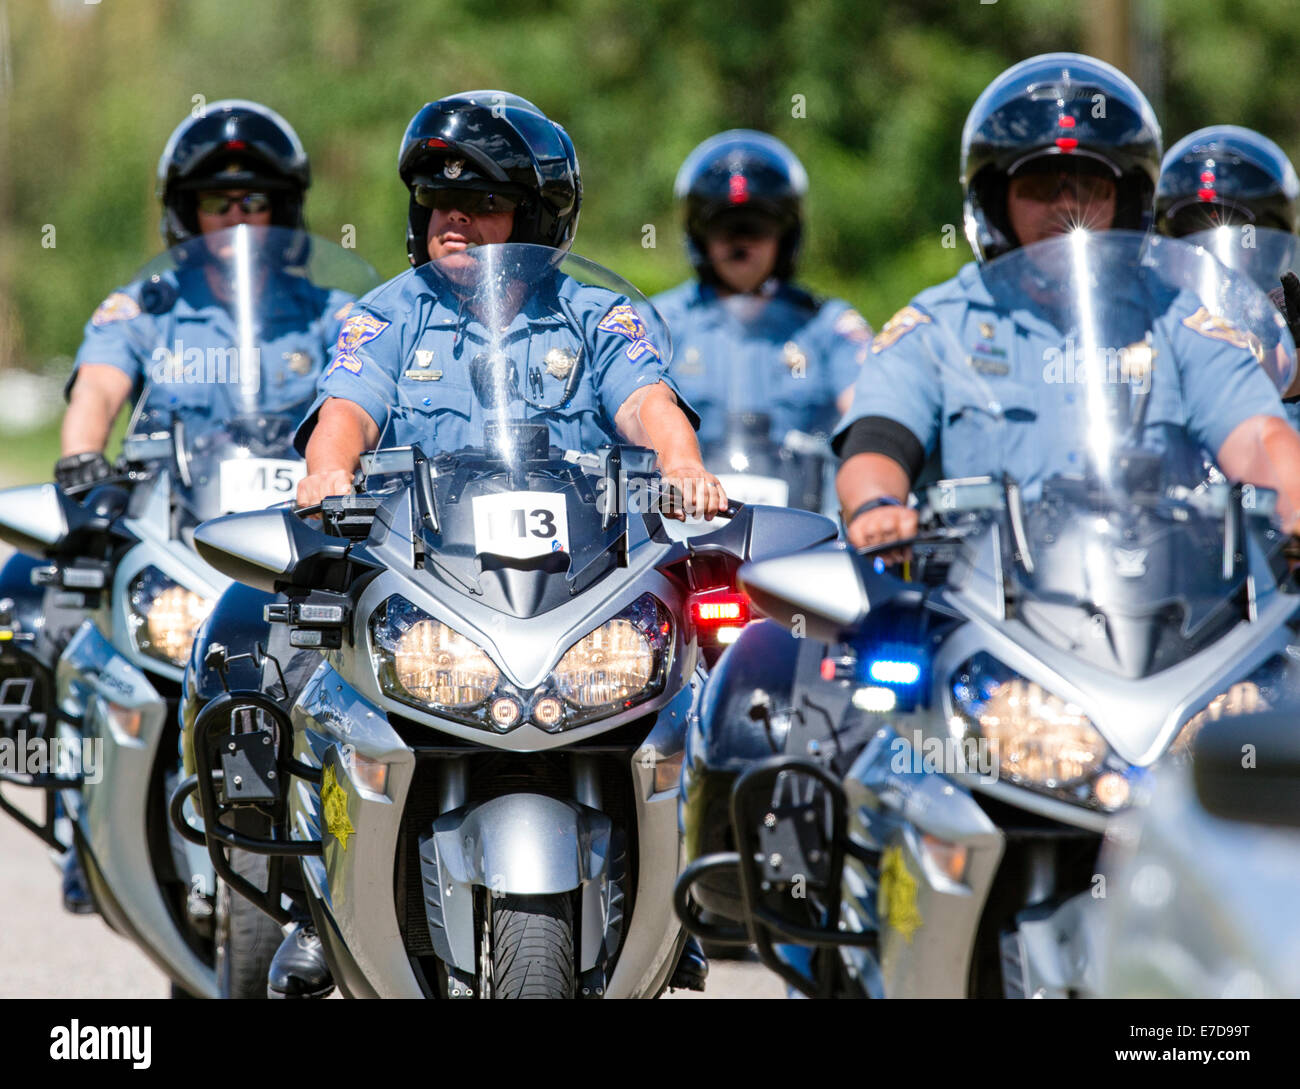 Colorado Polizia di Stato motocicli, USA Pro Challenge bike race, stadio 3, central Colorado, STATI UNITI D'AMERICA Foto Stock